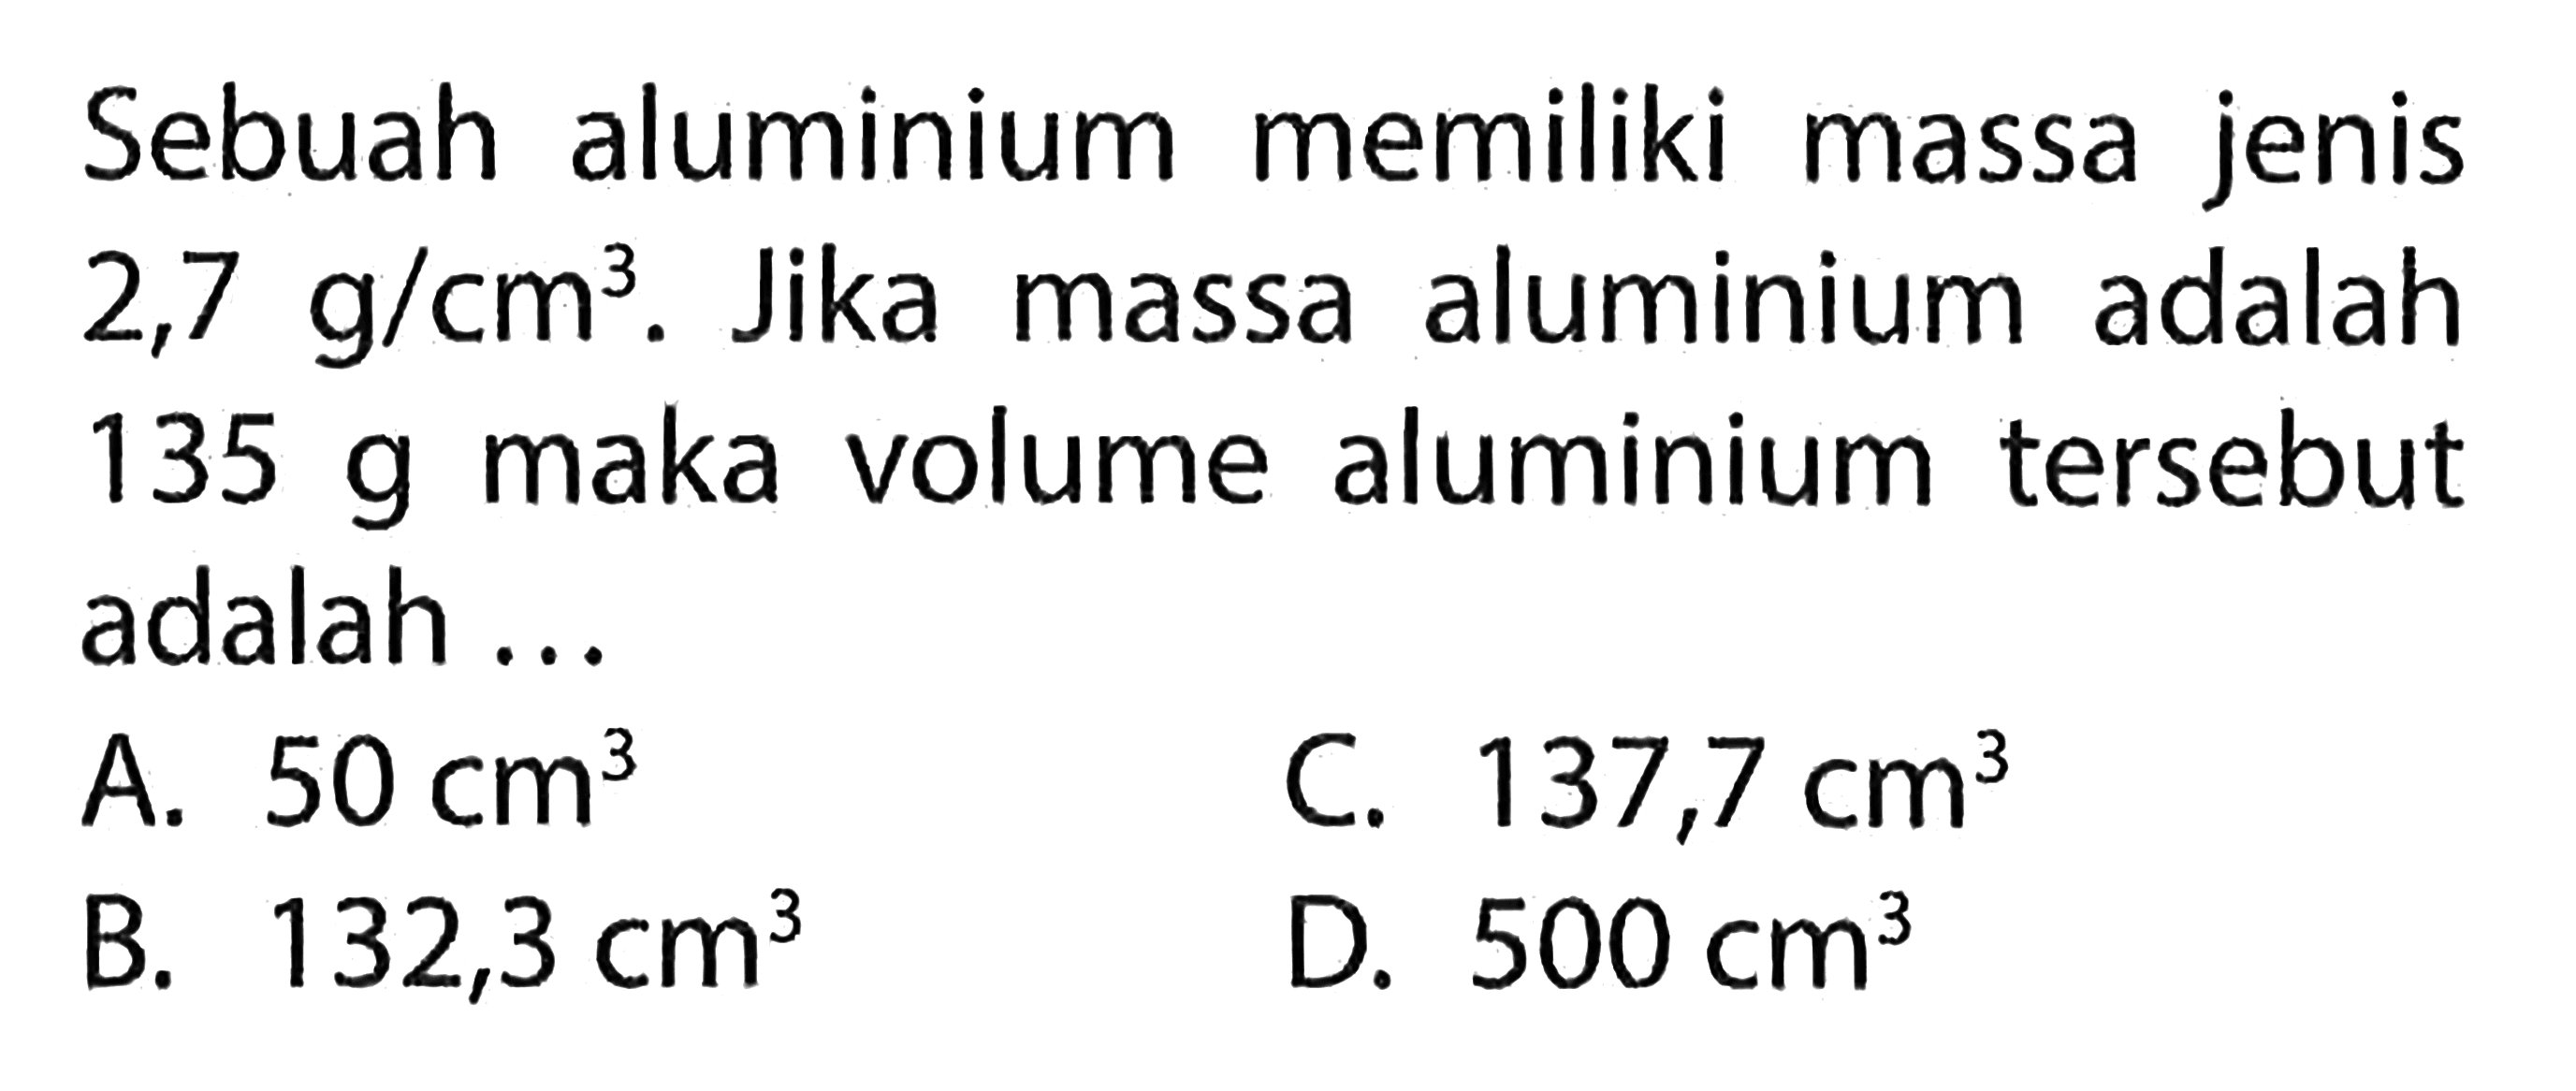 Sebuah aluminium memiliki massa jenis 2,7 g/cm^3. Jika massa aluminium adalah 135 g maka volume aluminium tersebut adalah ...